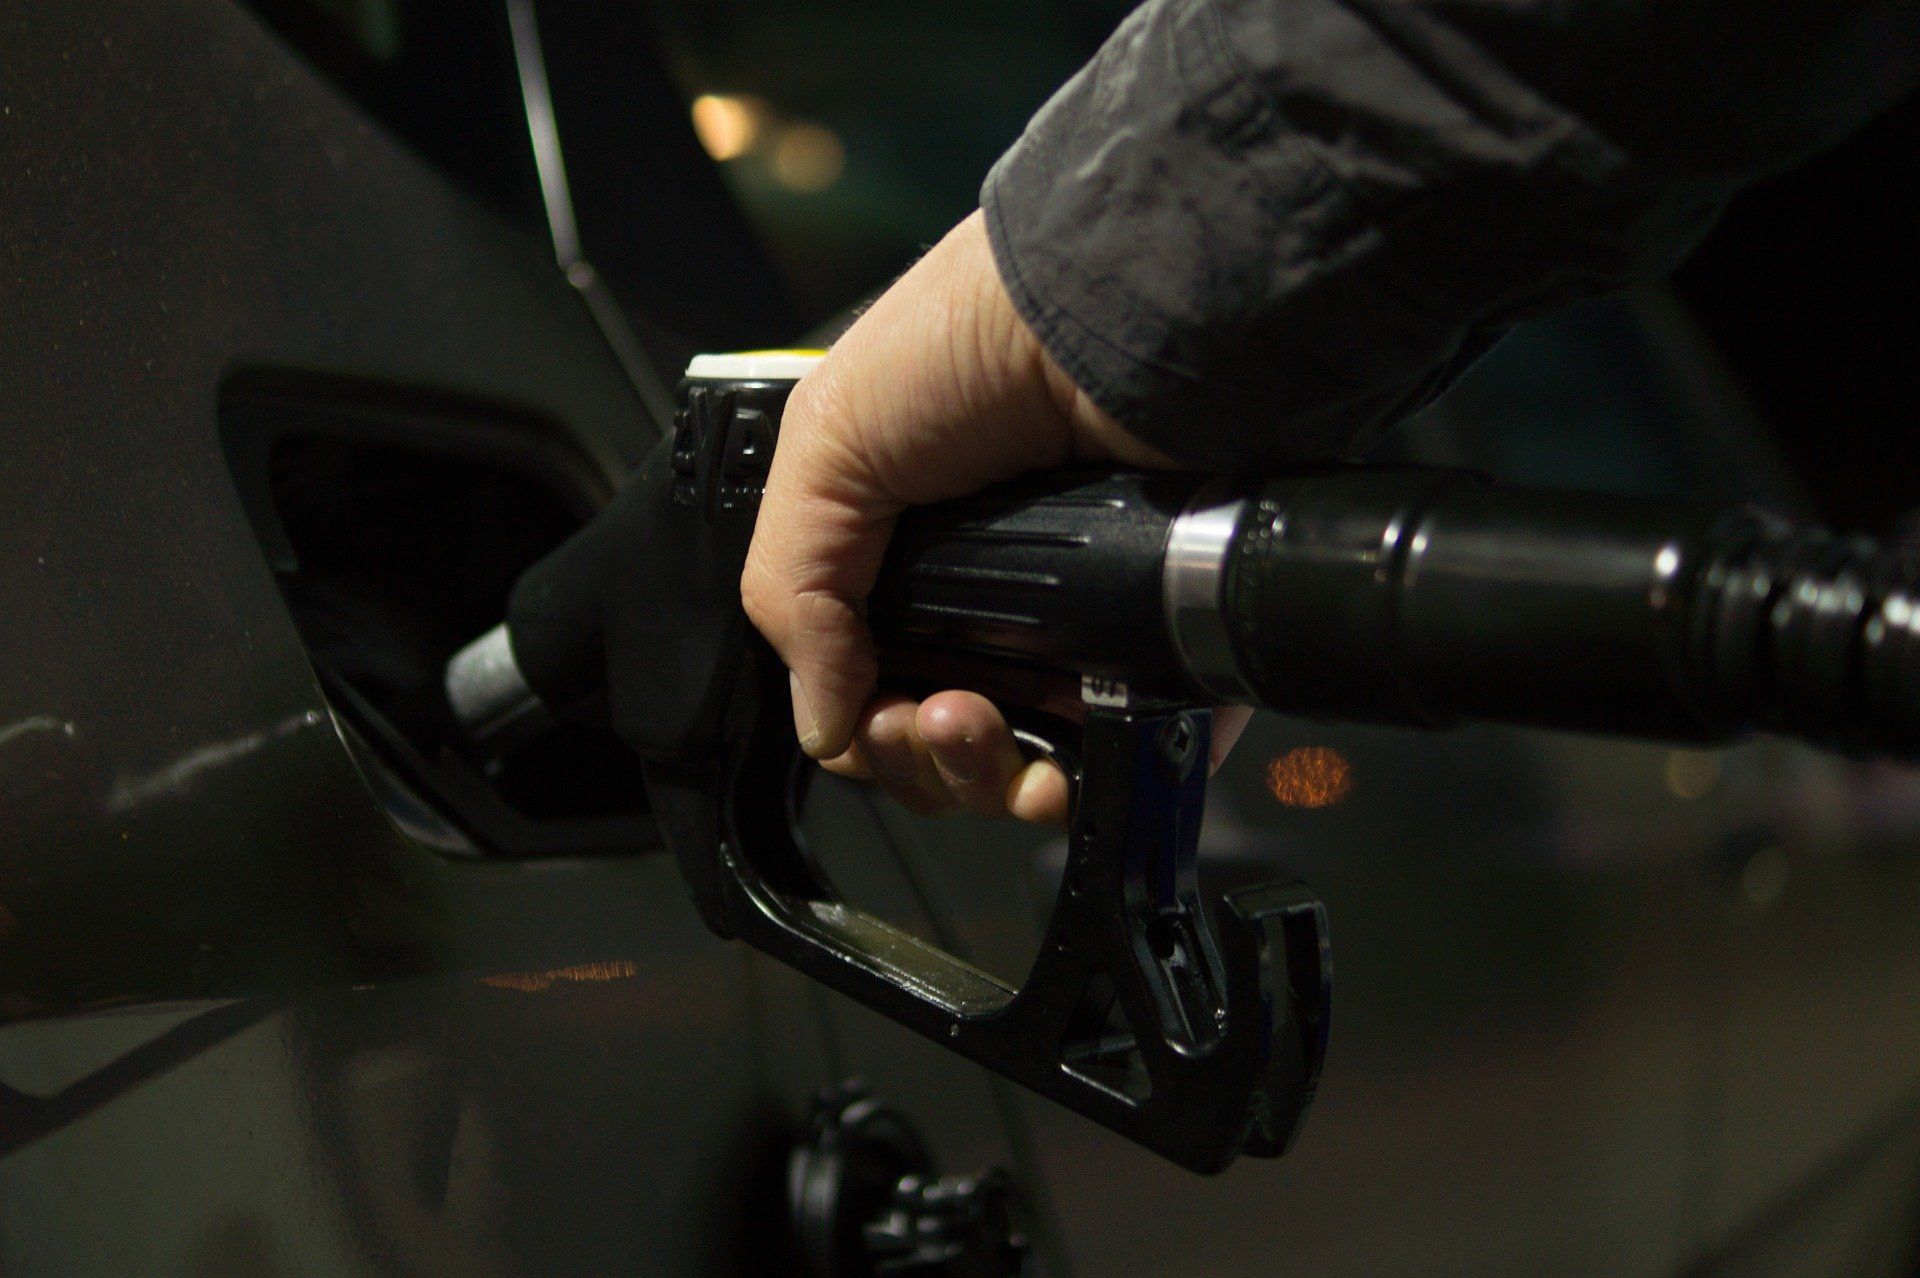 Fuel price July 11, 2022: Petrol Rs 96.72, diesel Rs 89.62 in Delhi